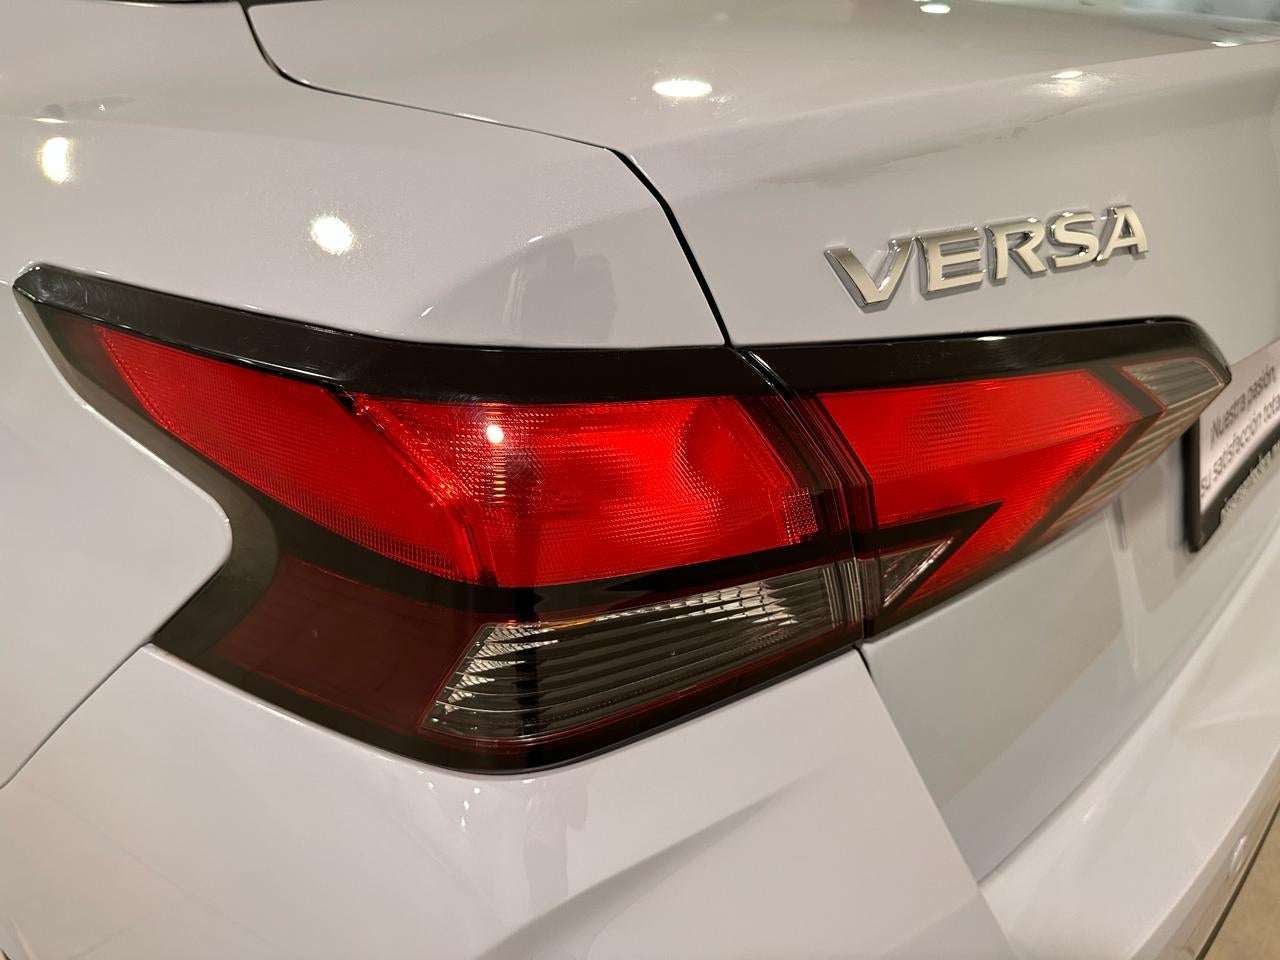 2024 Nissan Versa 4 pts. Exclusive, CVT, a/ac. Aut., piel, f. niebla, f. led, RA-17